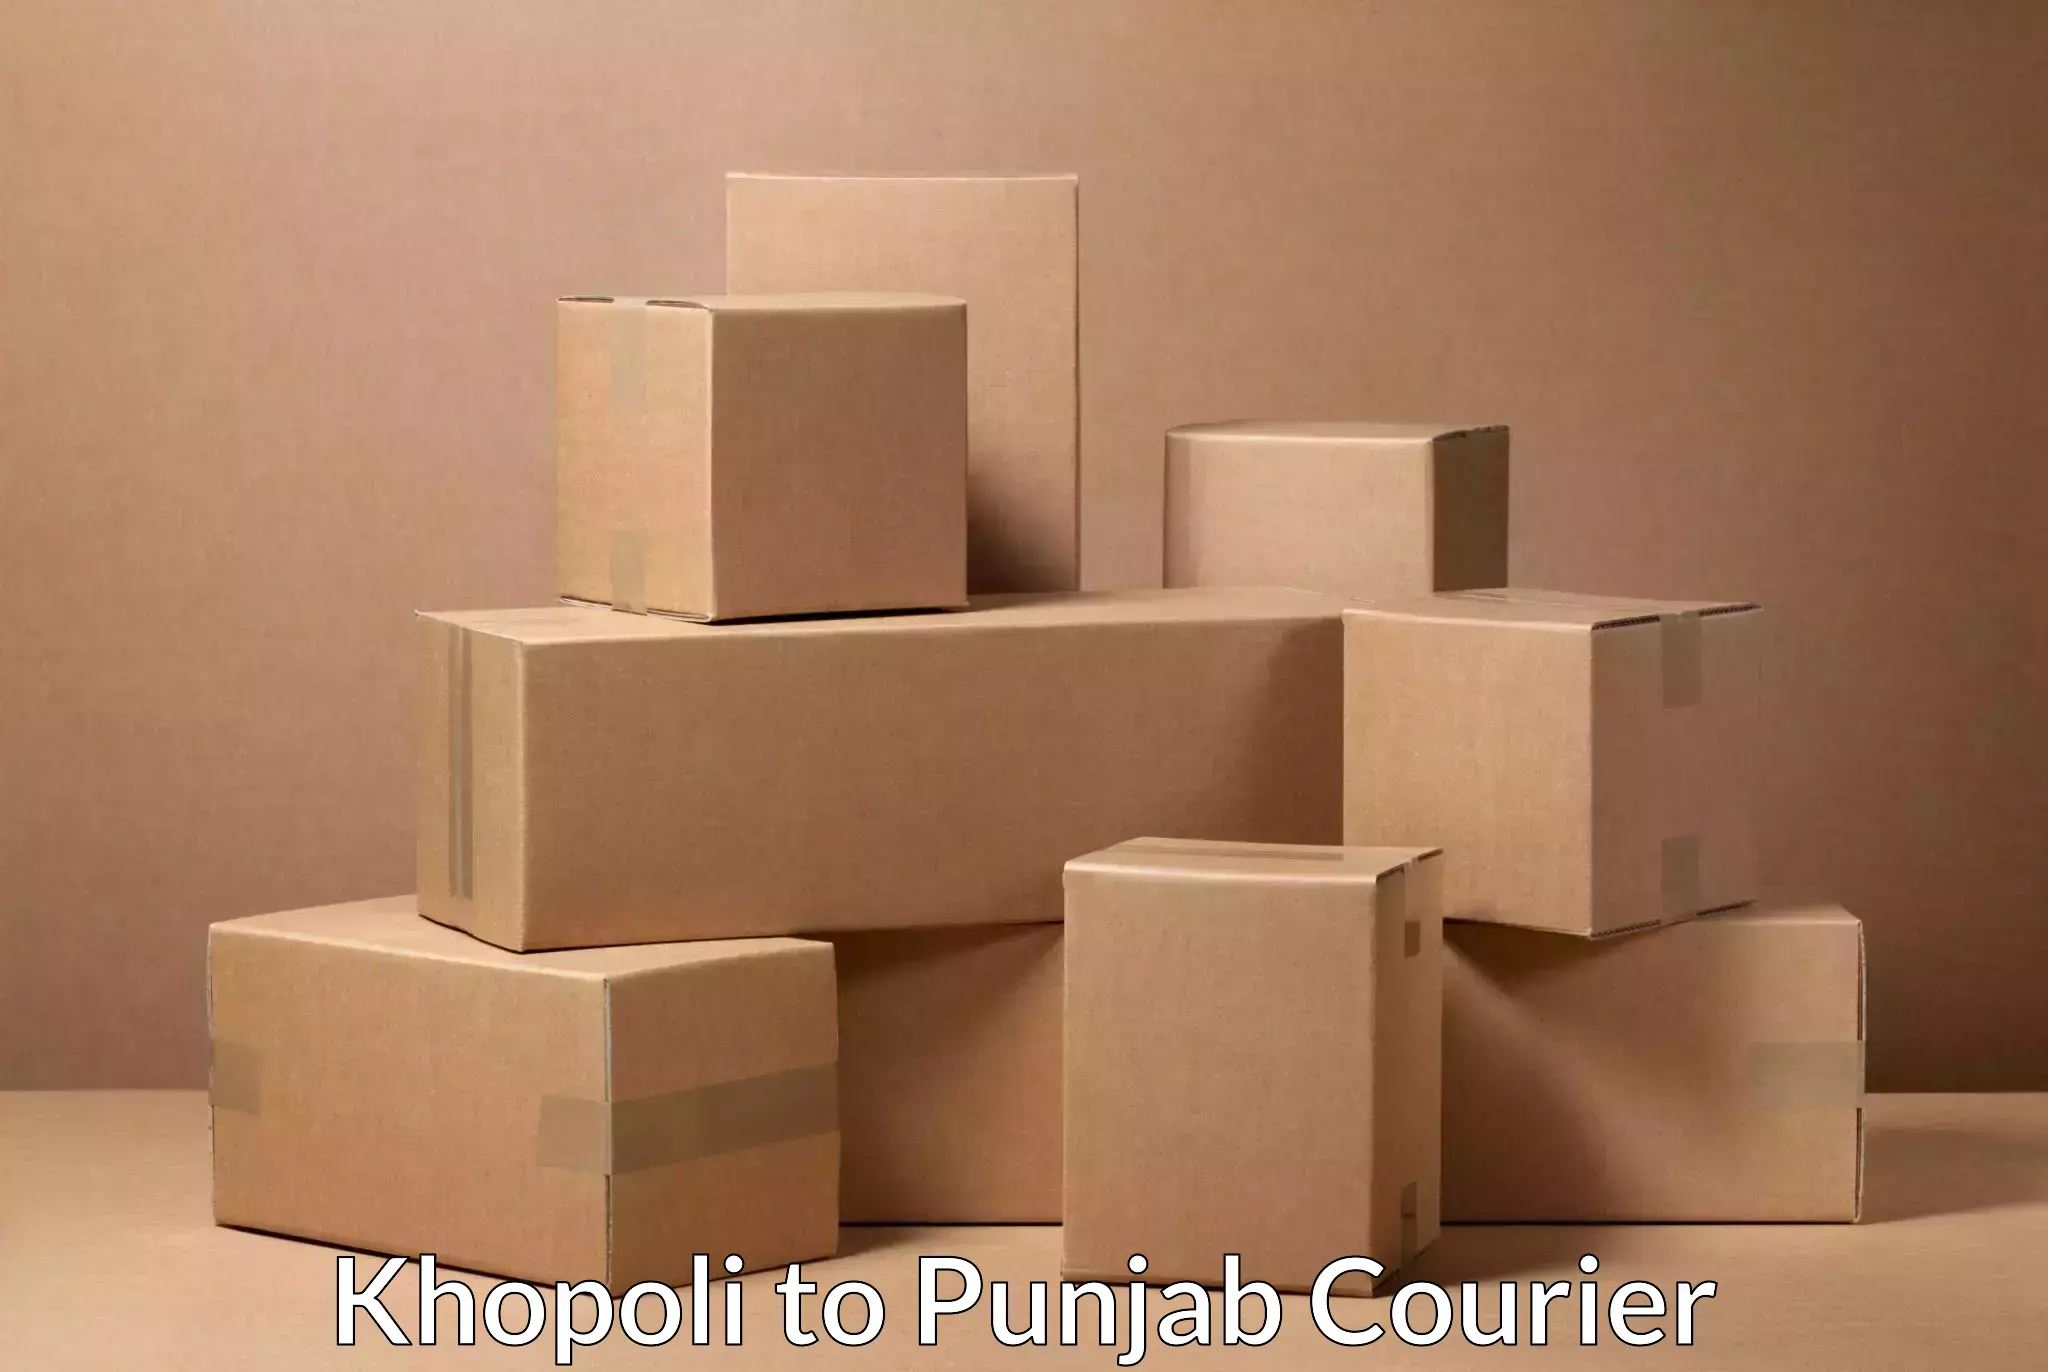 Advanced package delivery Khopoli to Khanna